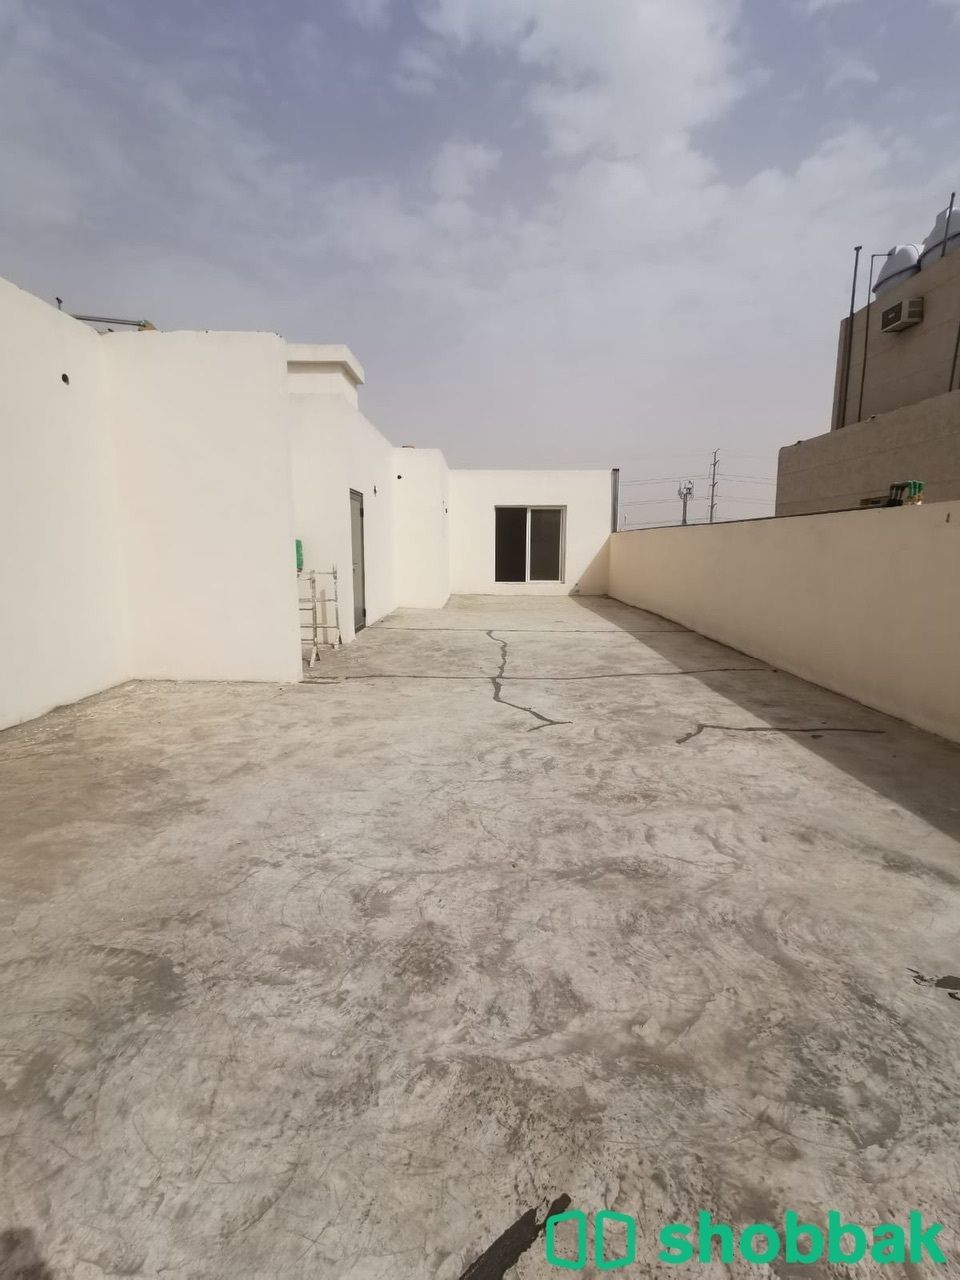 شقه تمليك ملحق ب٣أسطح للبيع Shobbak Saudi Arabia